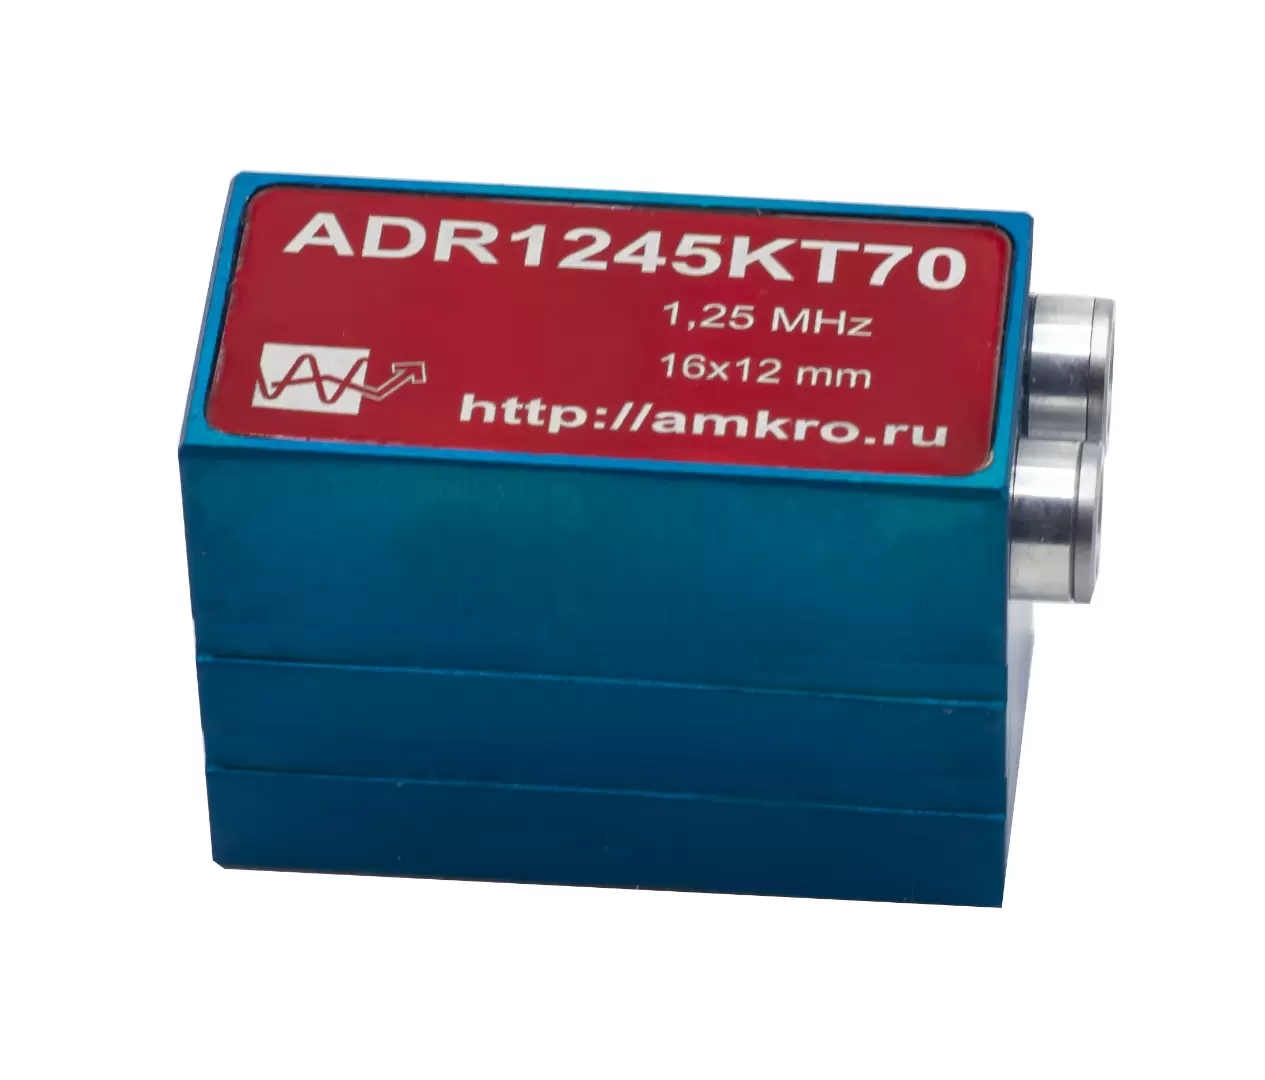 ADR1245KT70 (аналог ПЦ-45-1,2 КТ) наклонный р/с тандемный преобразователь 1,25 МГц - 3